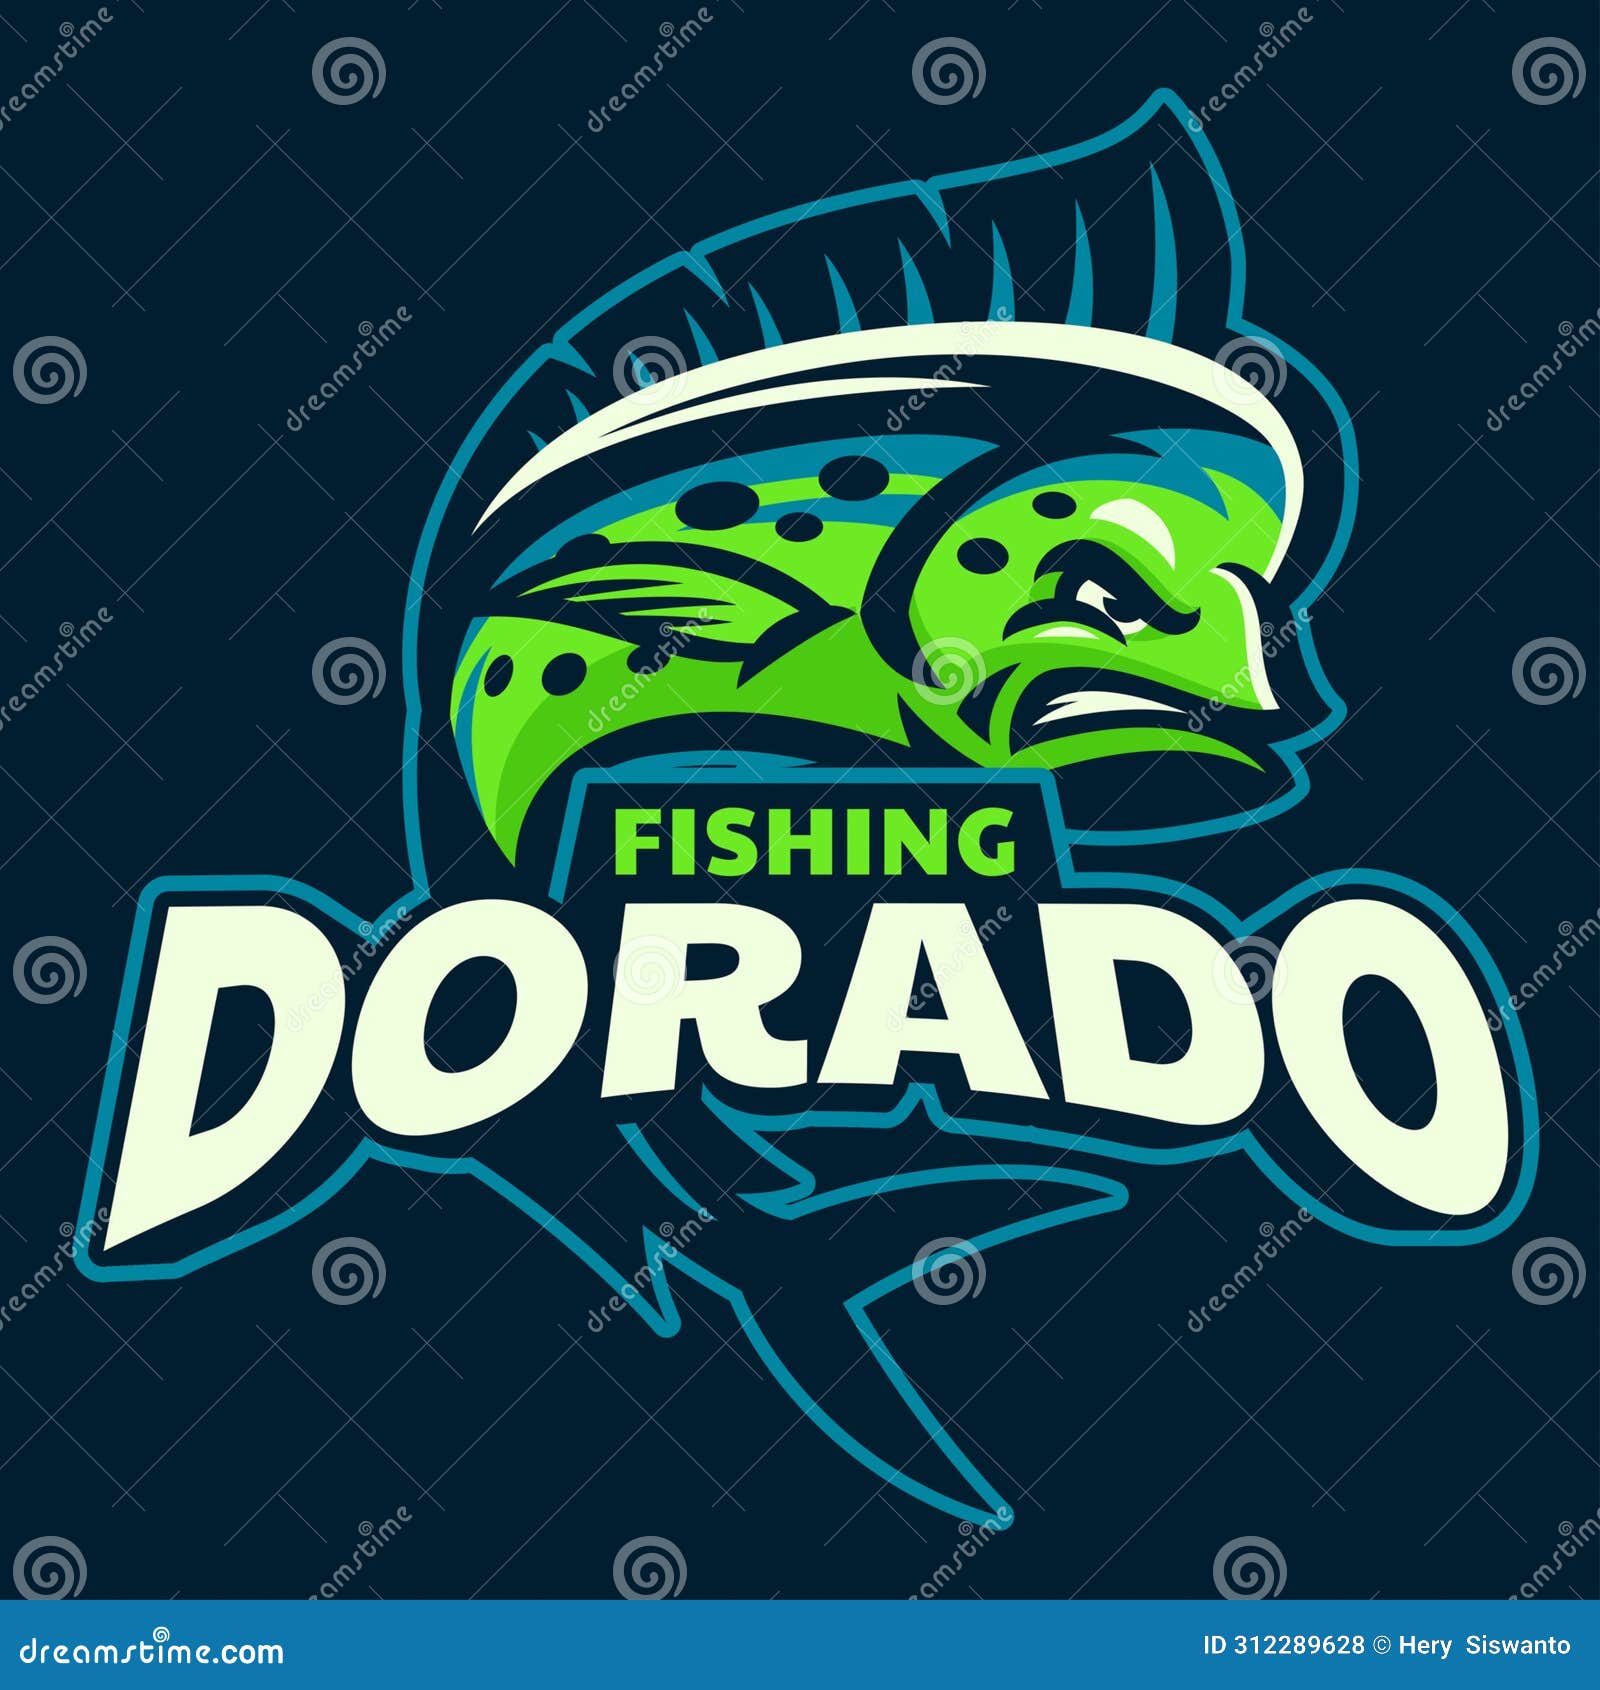 fishing dorado logo mascot 